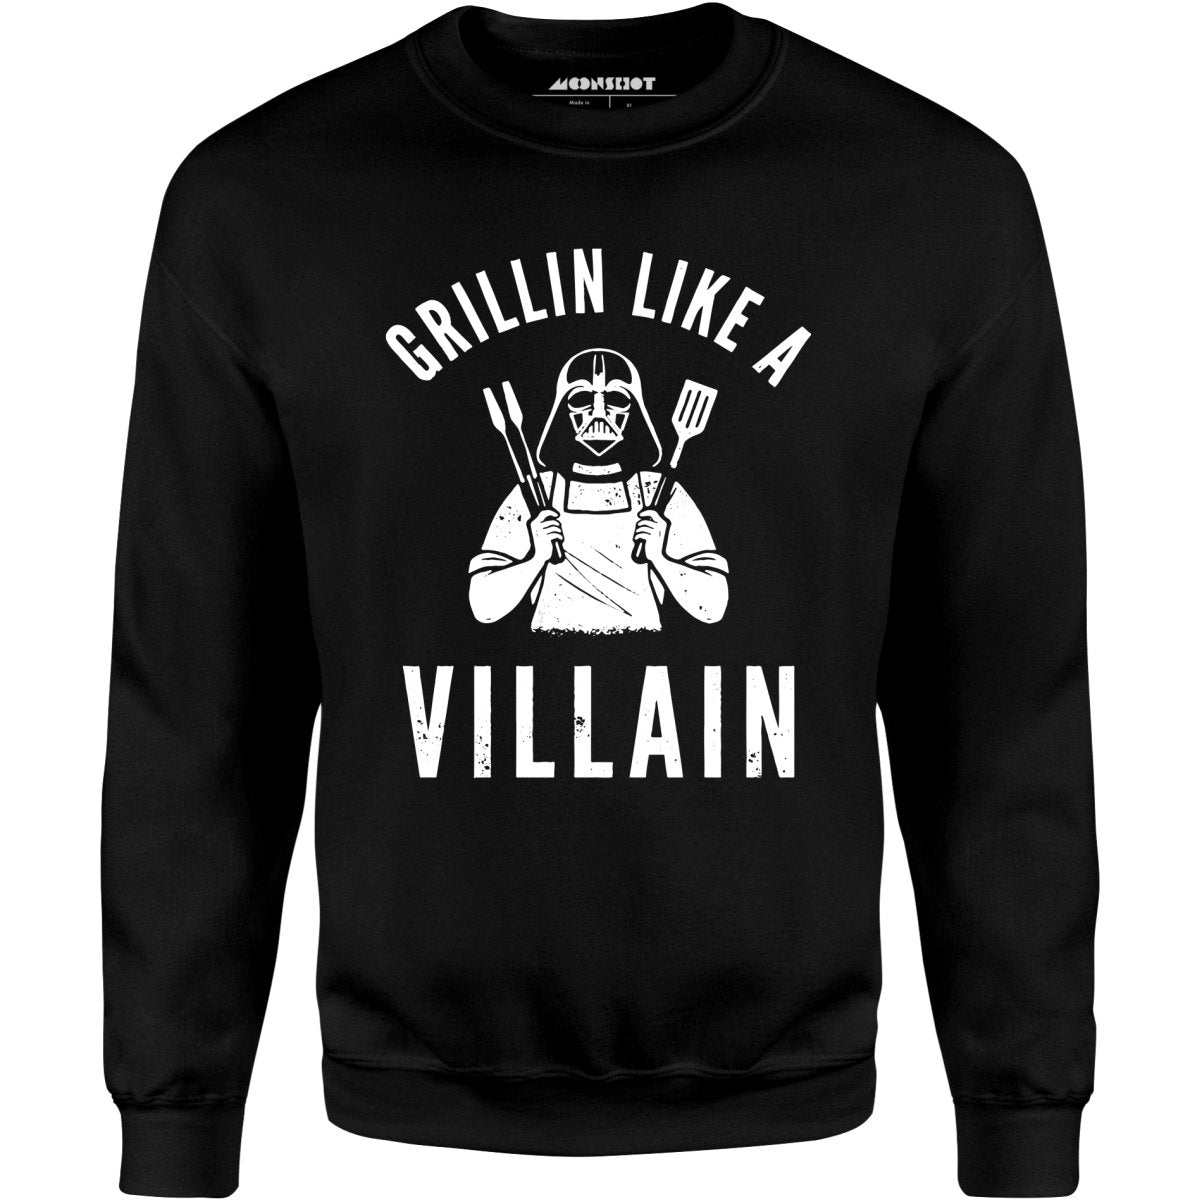 Grillin Like a Villain - Unisex Sweatshirt